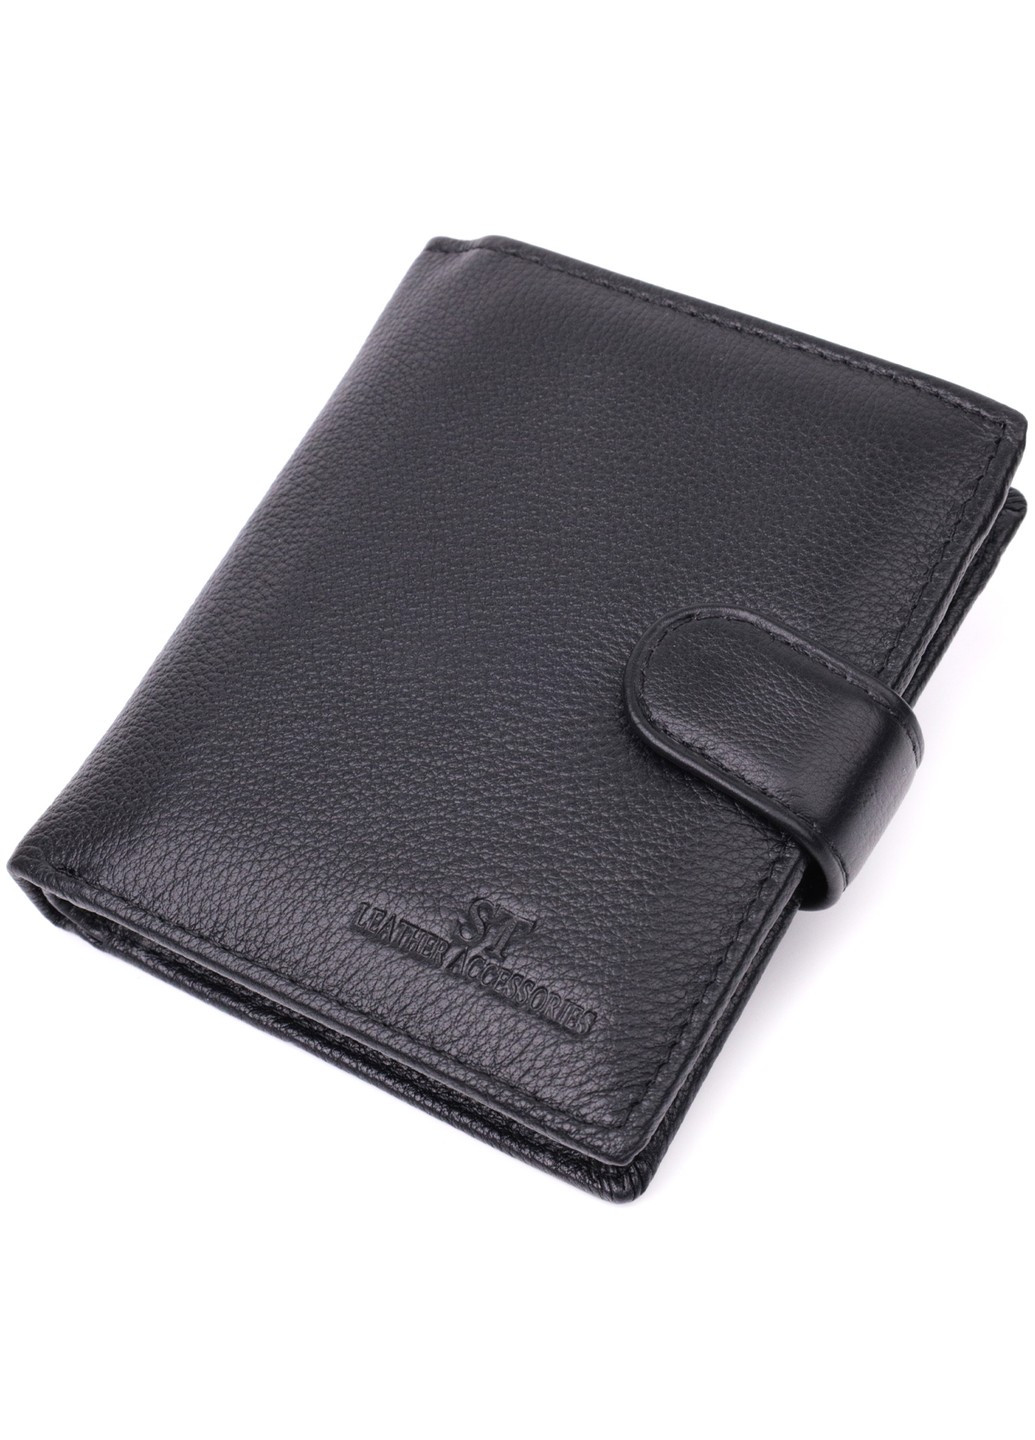 Вертикальный бумажник с блоком под документы из натуральной кожи 22479 Черный st leather (278000986)